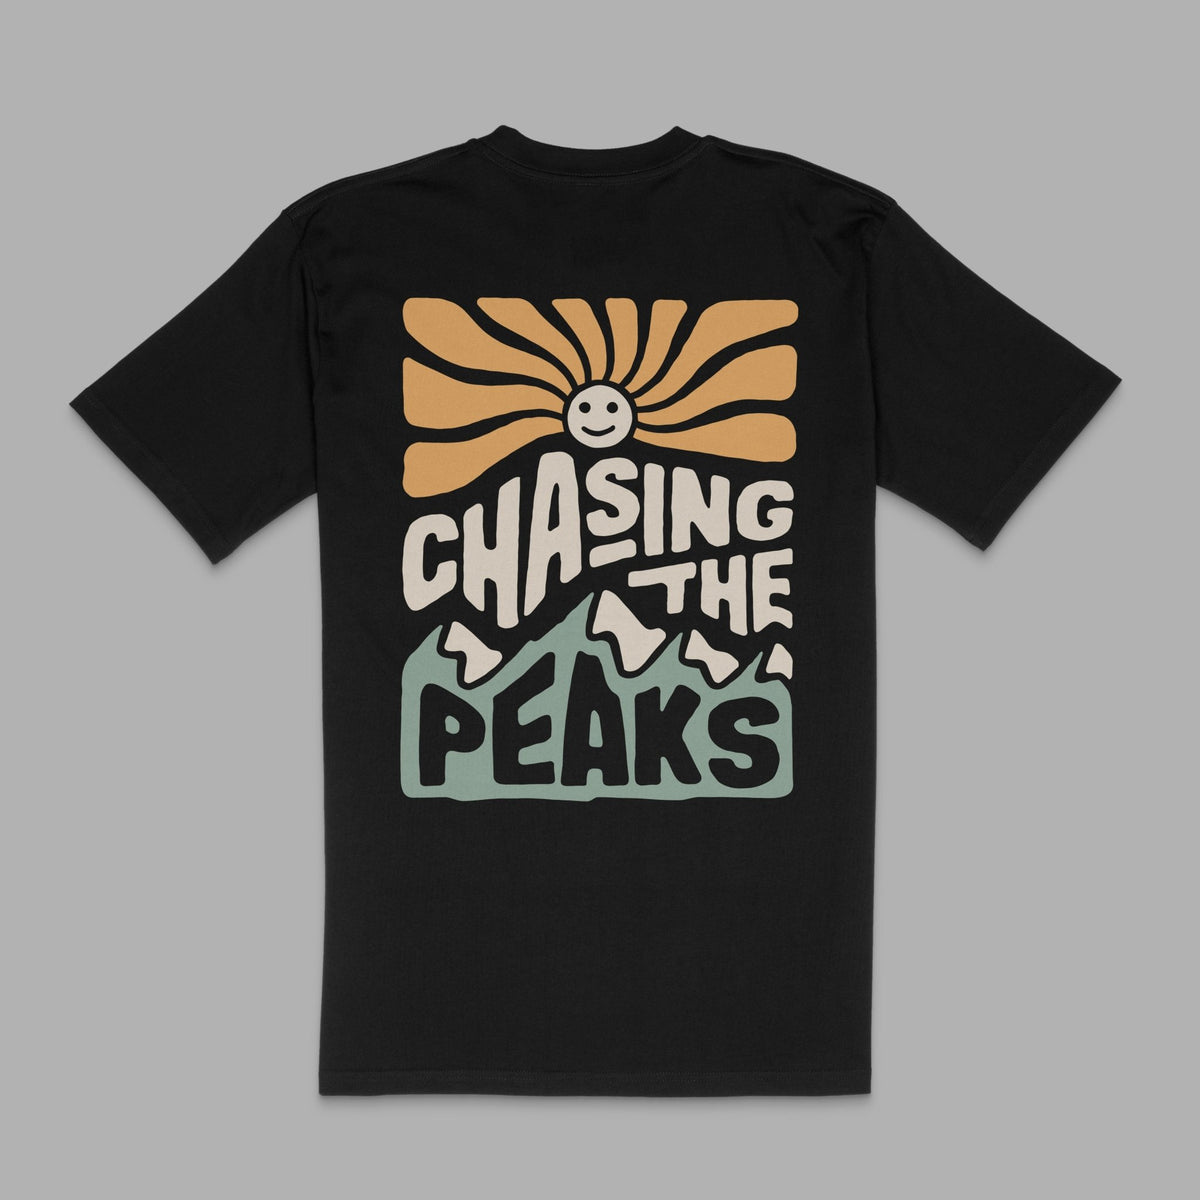 Black "Chasing Peaks" Tee - Stoked&Woke Clothing